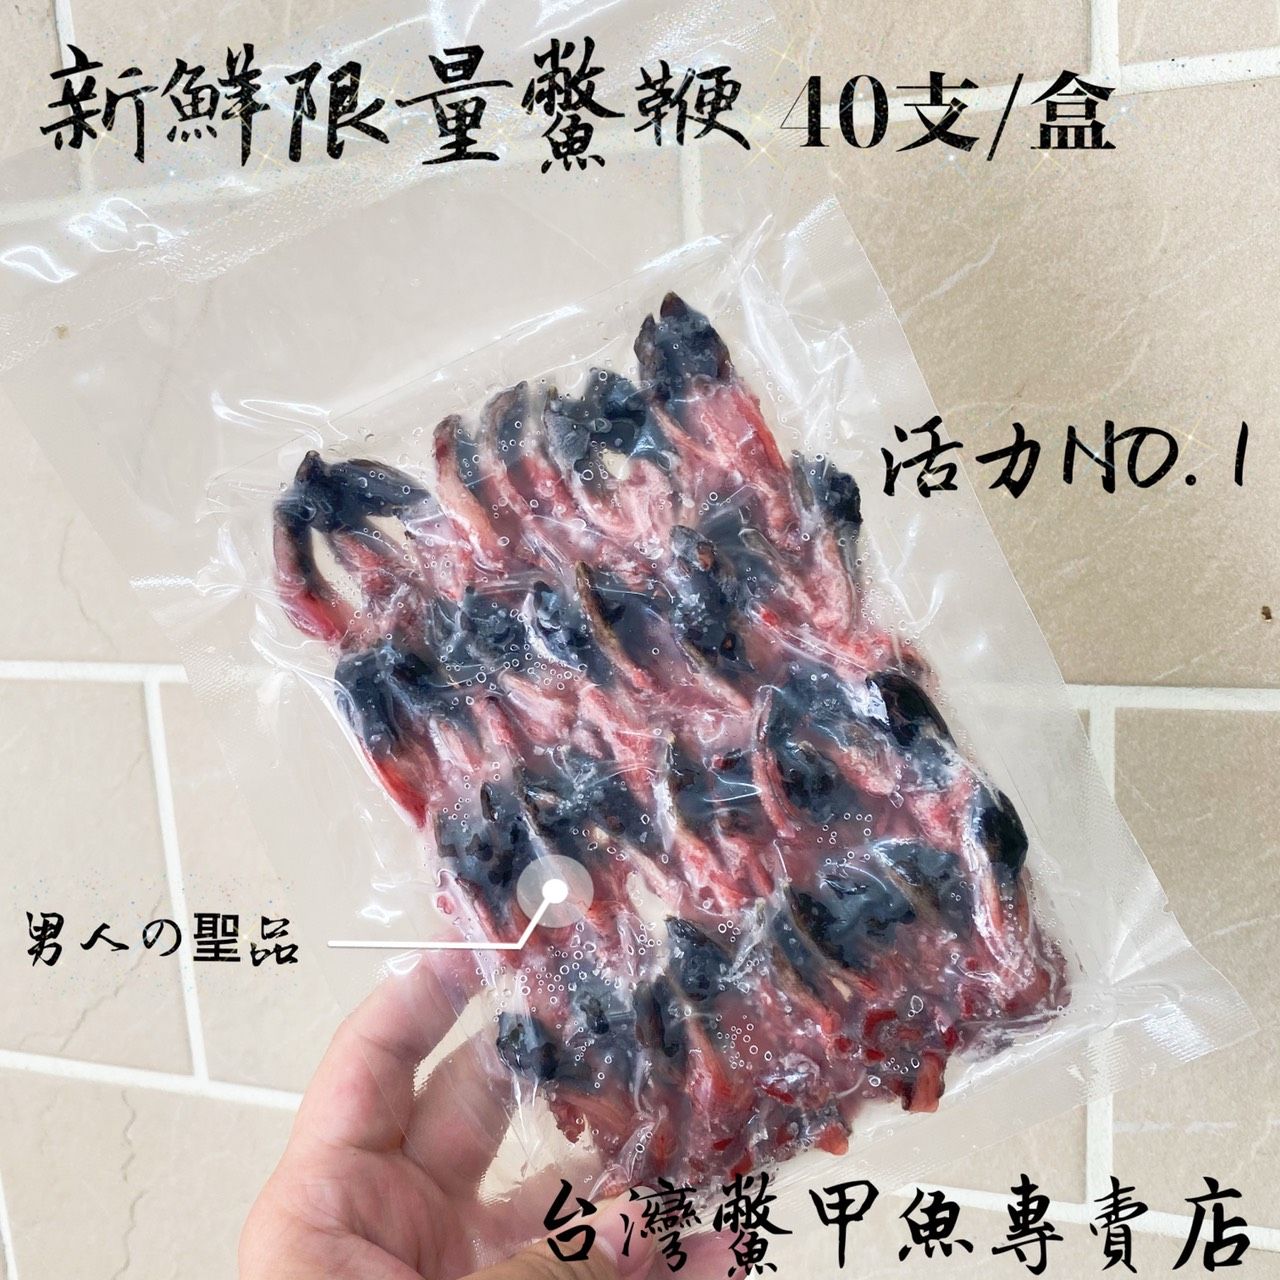 尚青ㄟ【台灣鱉】新鮮鱉鞭 40支/盒 可料理三杯 SGS合格檢驗甲魚